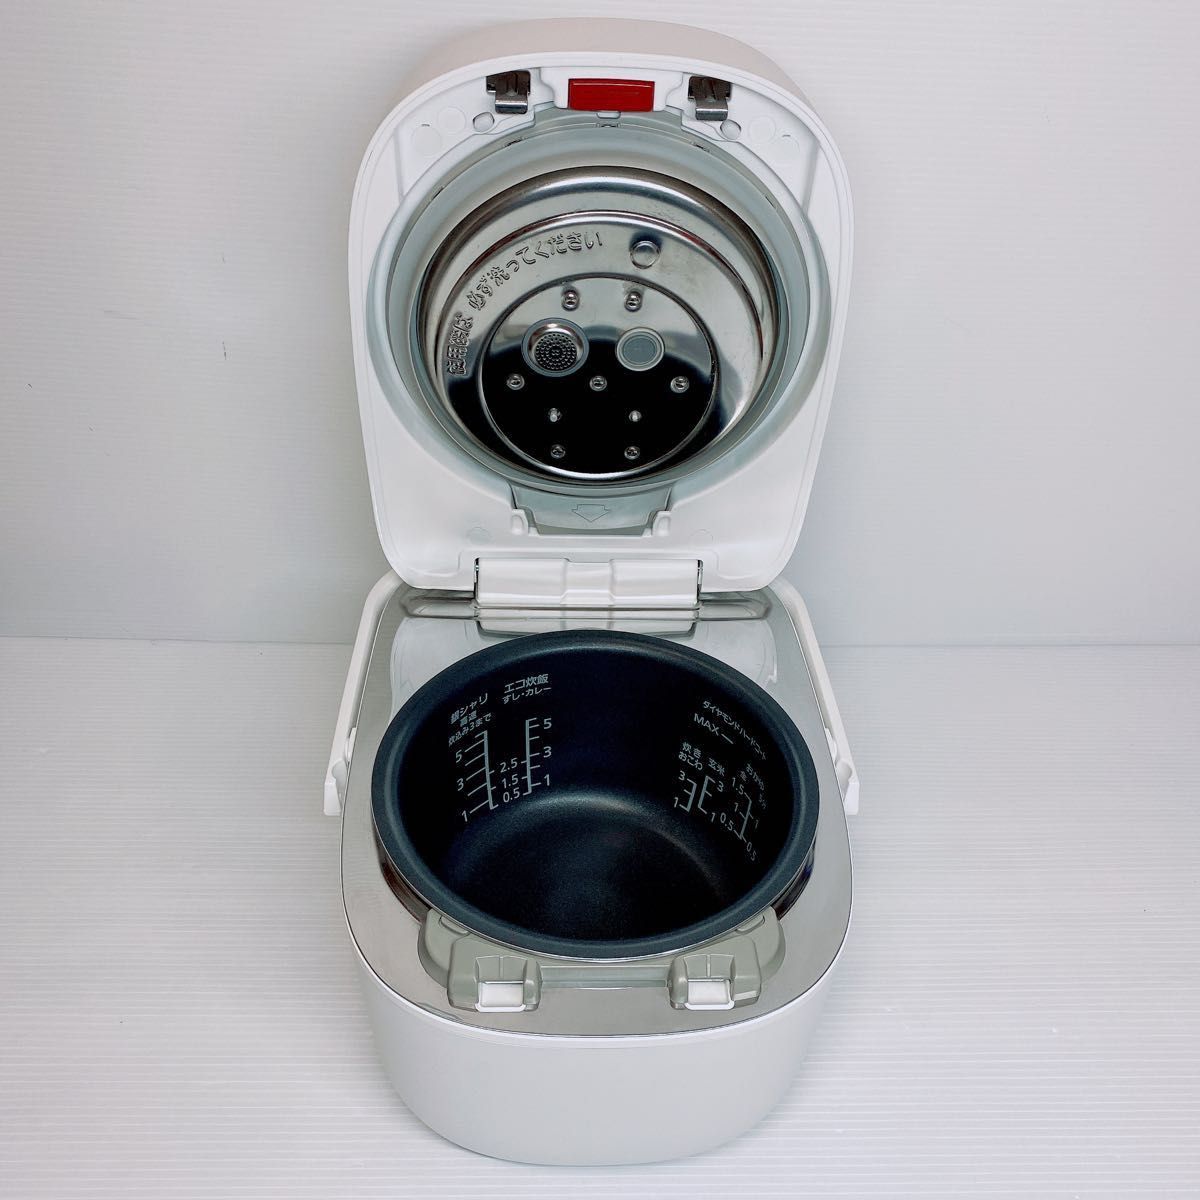 Panasonic パナソニック 炊飯器 5.5合 可変圧力IH式 Wおどり炊き SR-MPW100-W